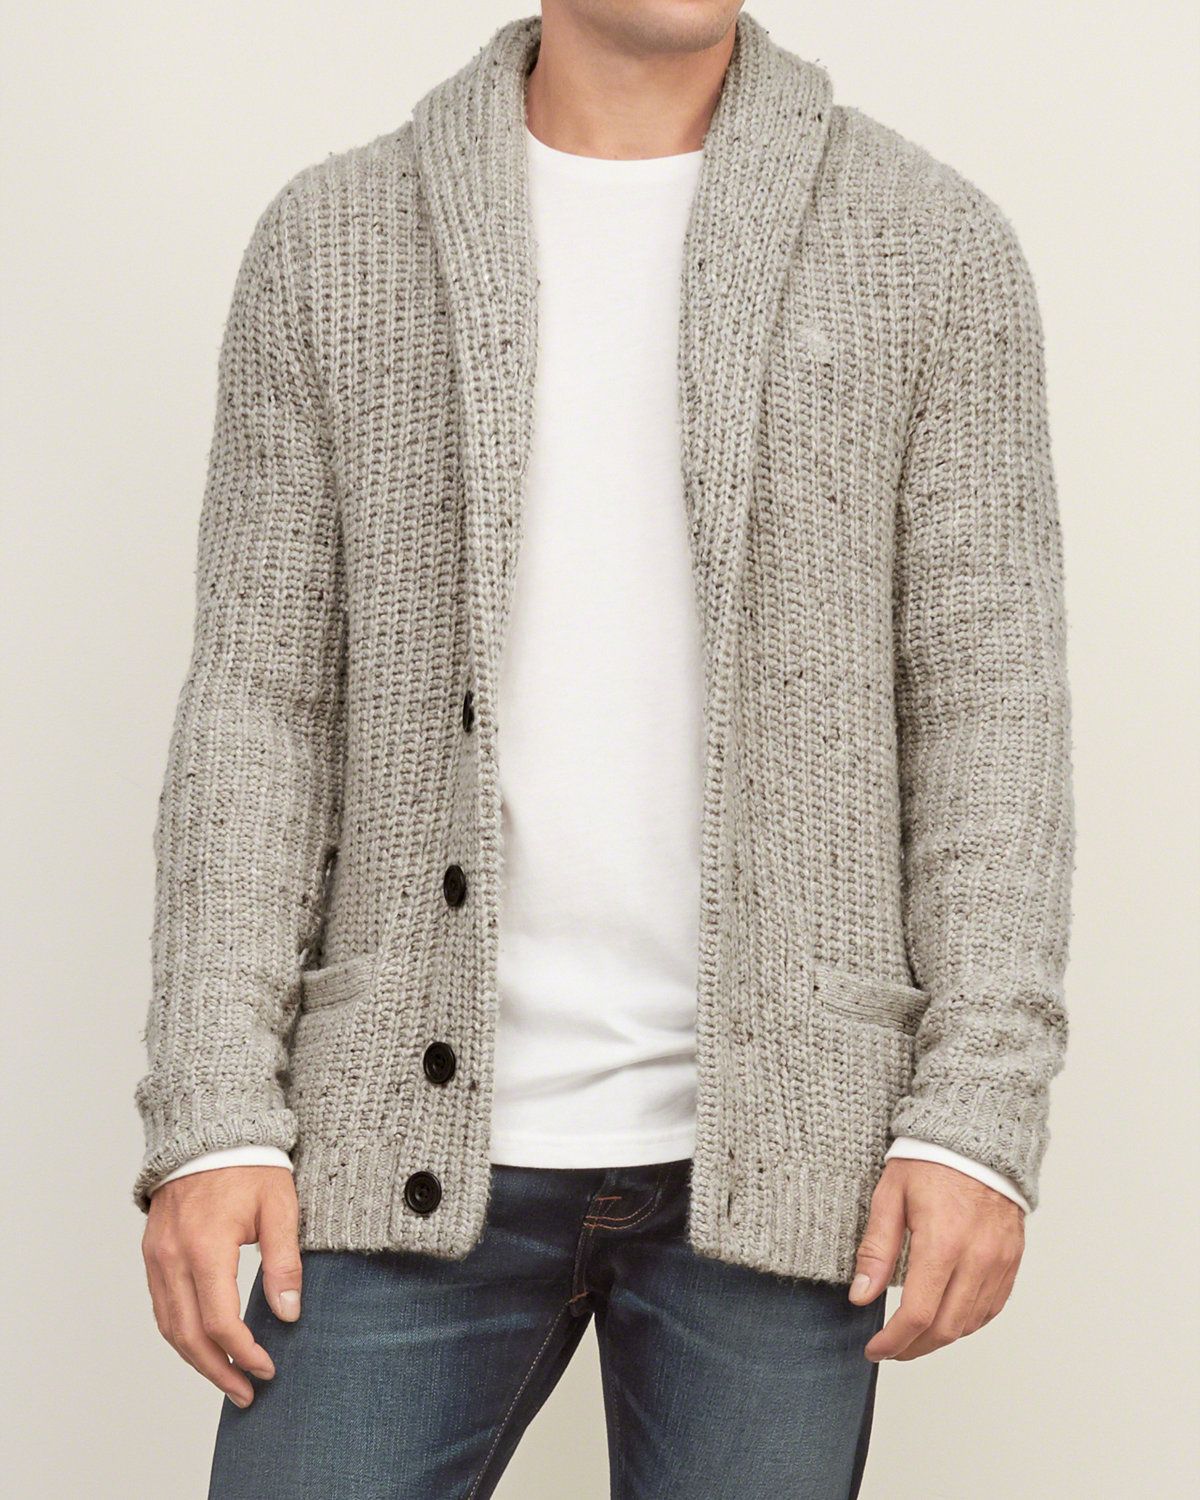 Shawl Cardigan Sweater